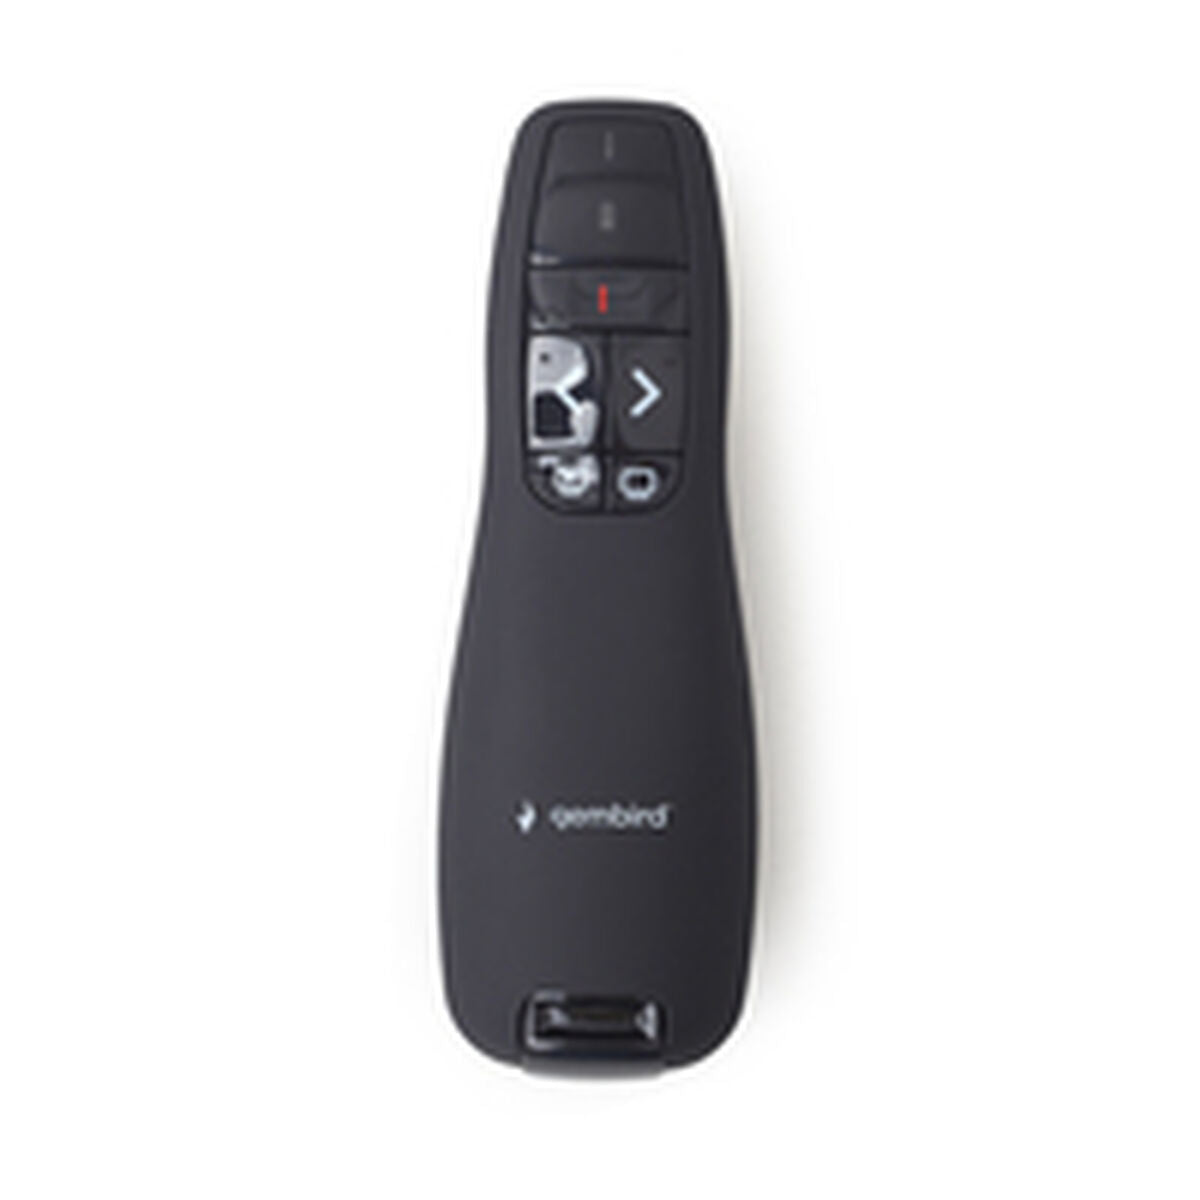 Laserpointer GEMBIRD *Wireless presenter with laser pointer